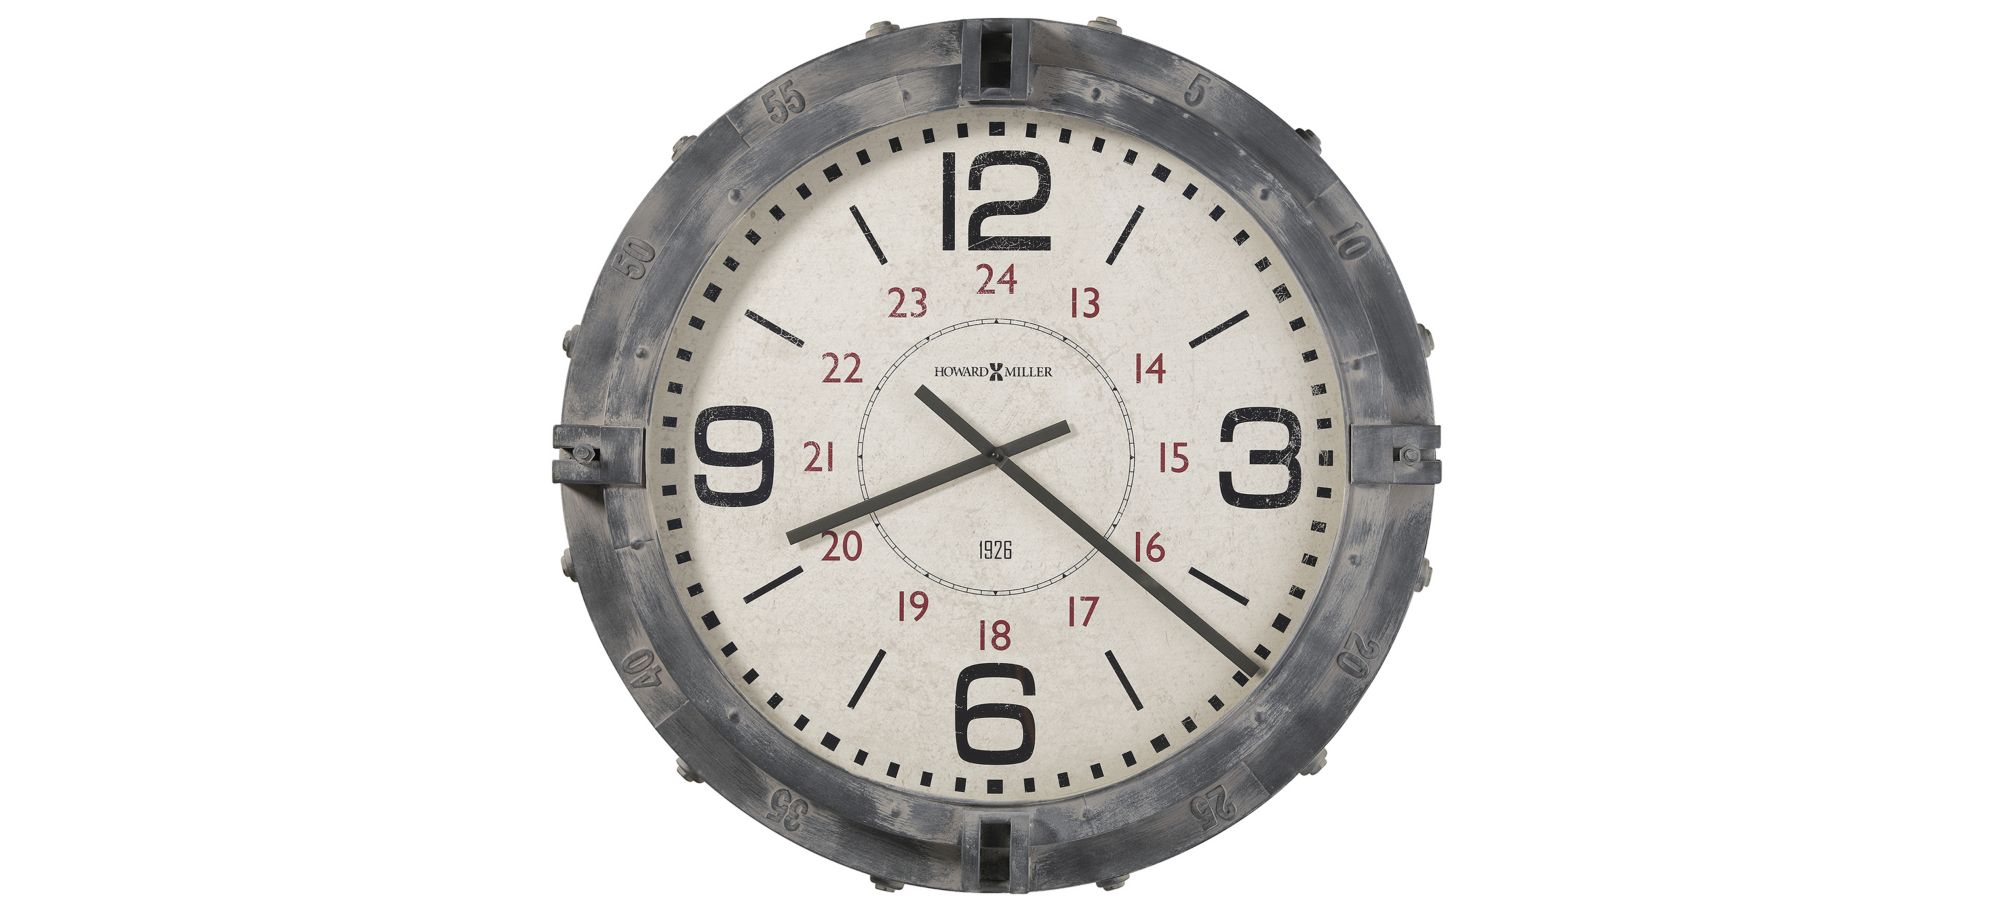 Seven Seas Wall Clock in Gray by Howard Miller